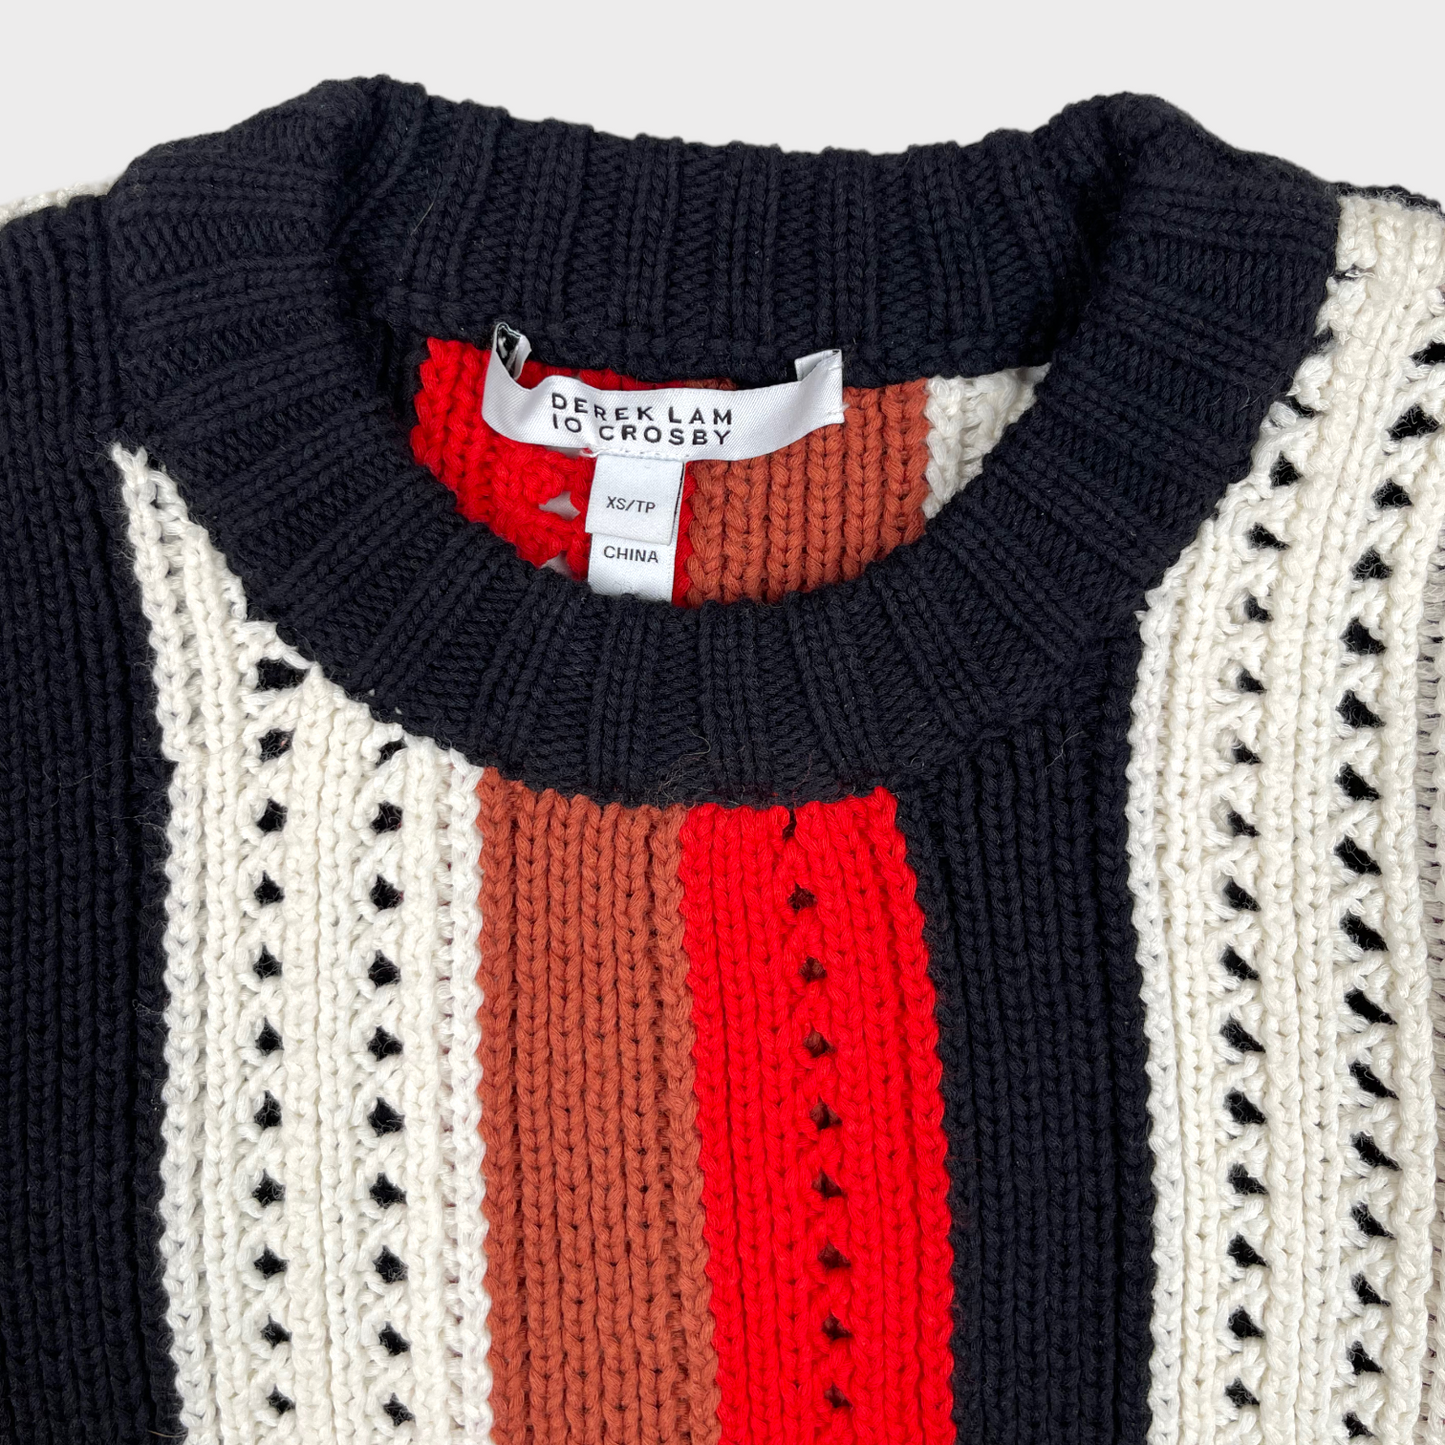 Derek Lam 10 Crosby Pointelle Knit Striped Knit Sweater Top Women's Size XS